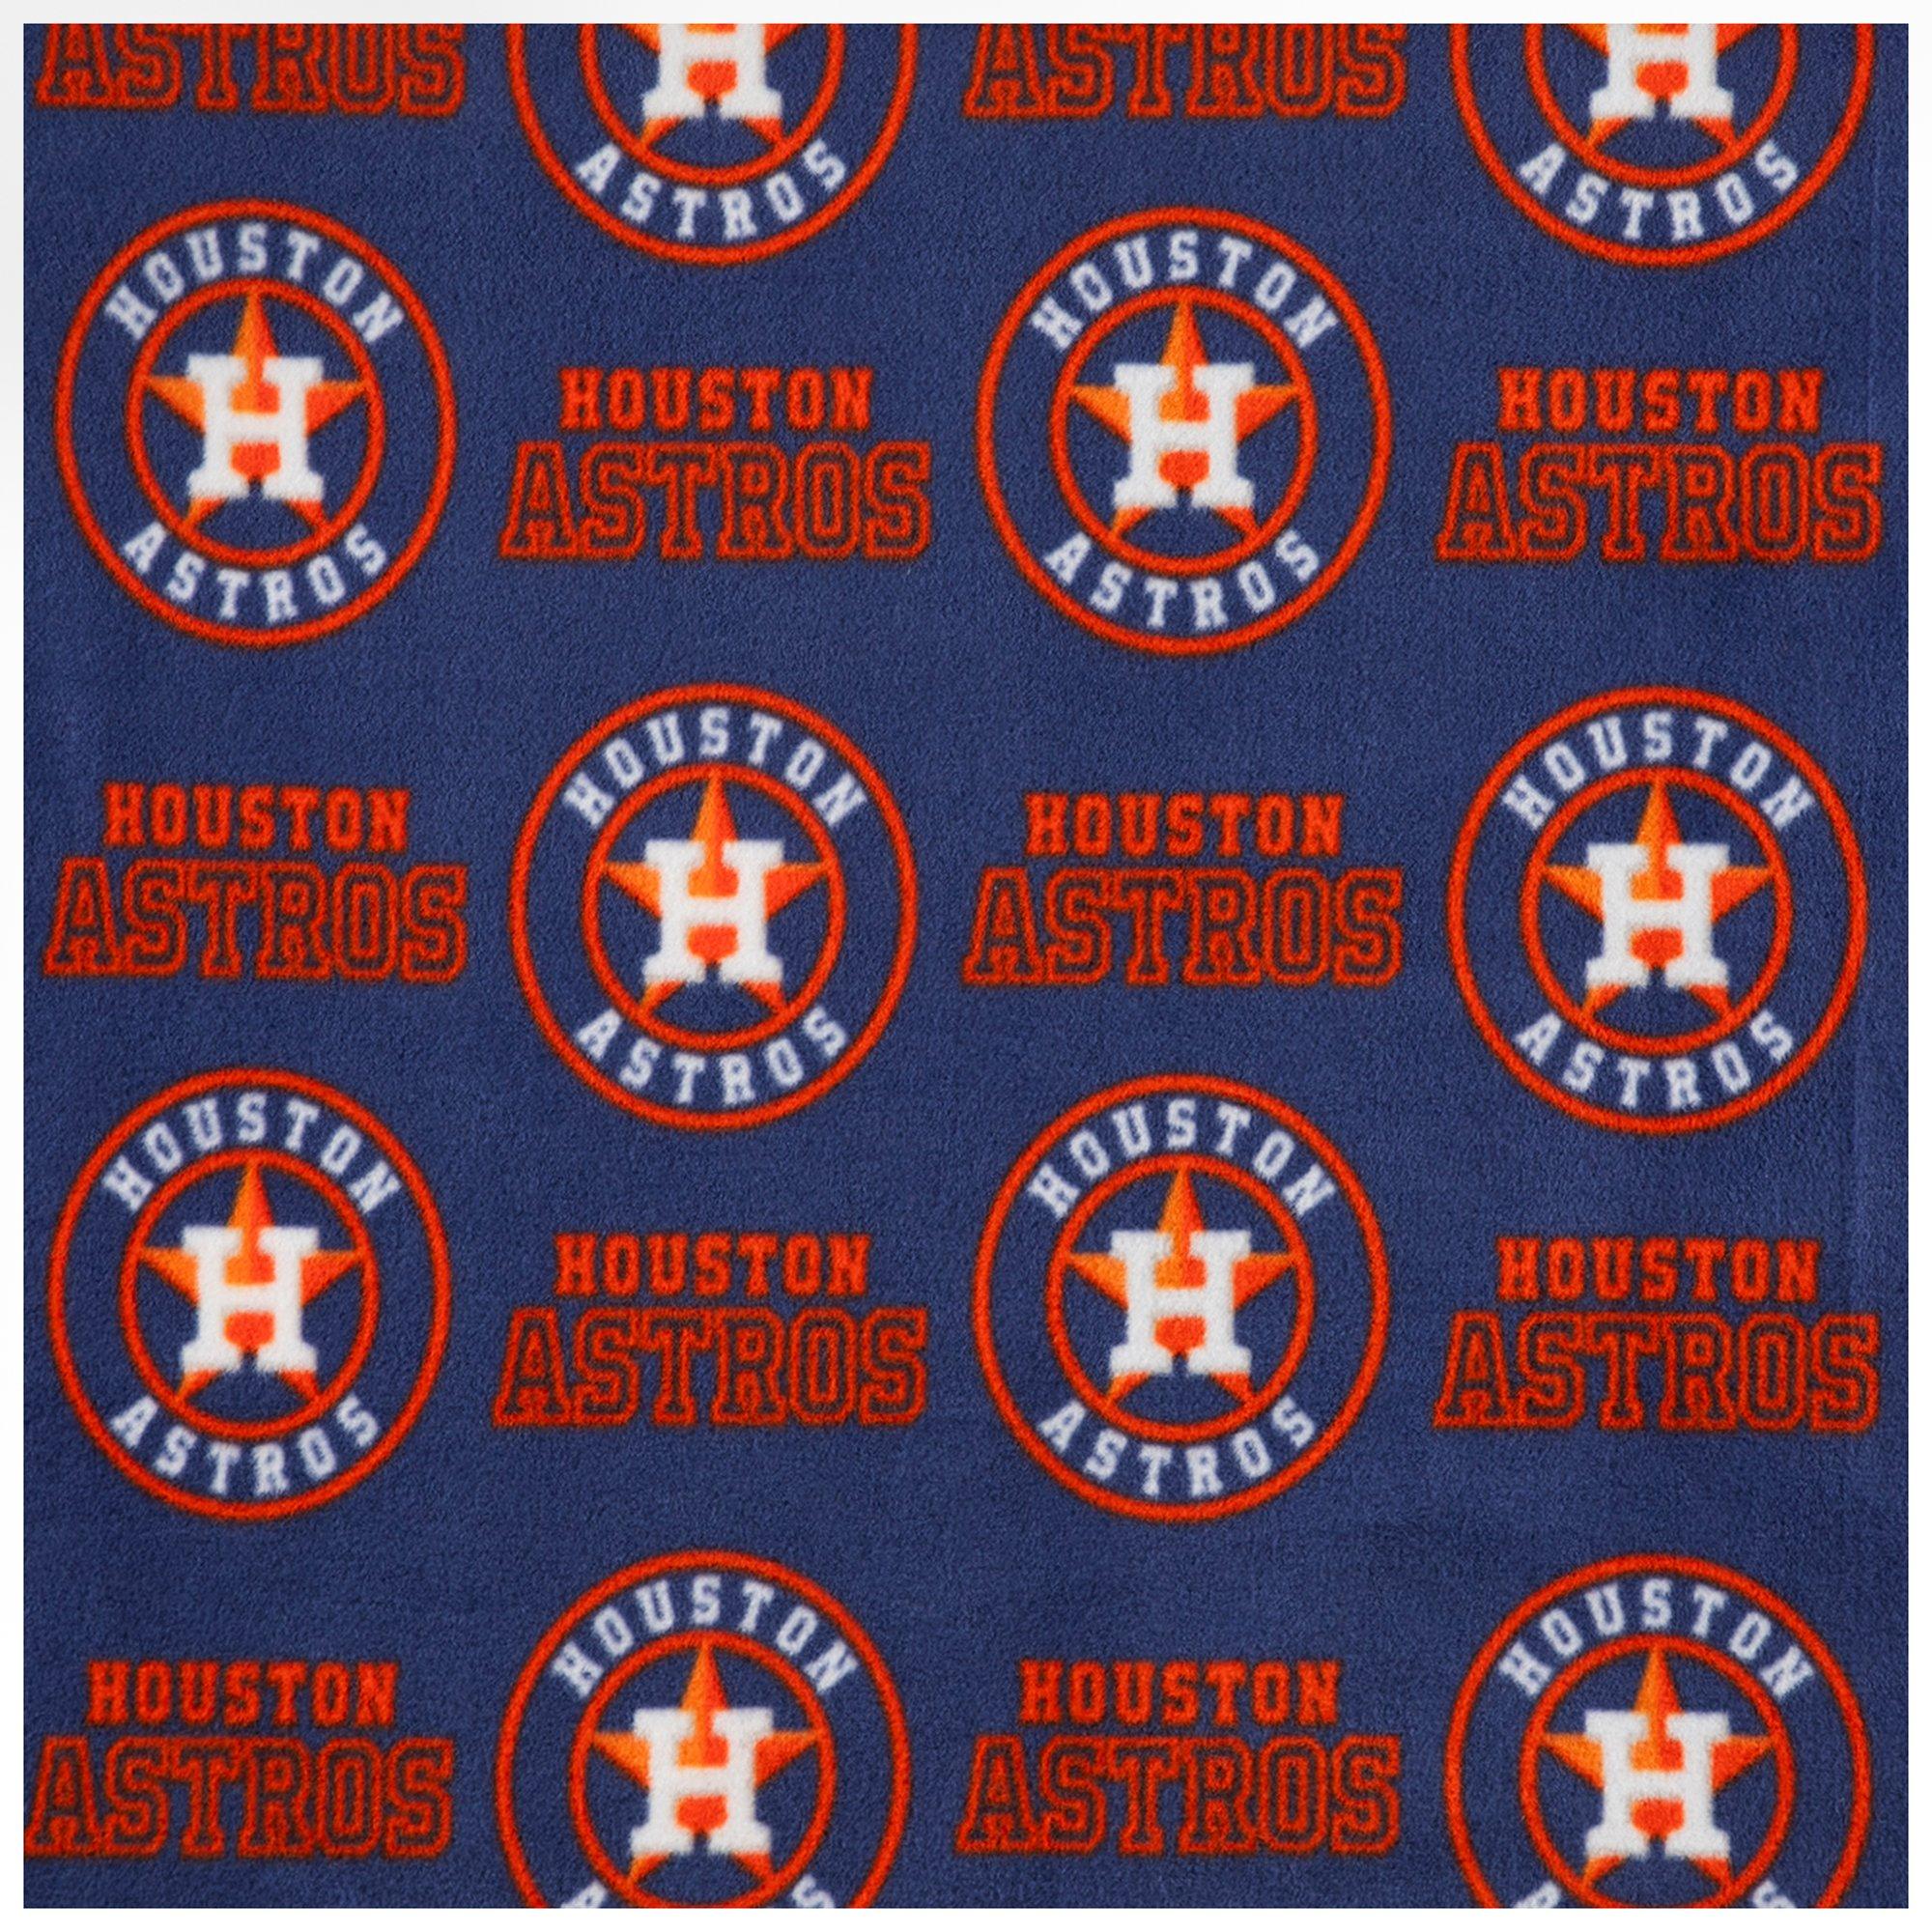 MLB Houston Astros Plaid Flannel Fabric by the Yard 60075B 